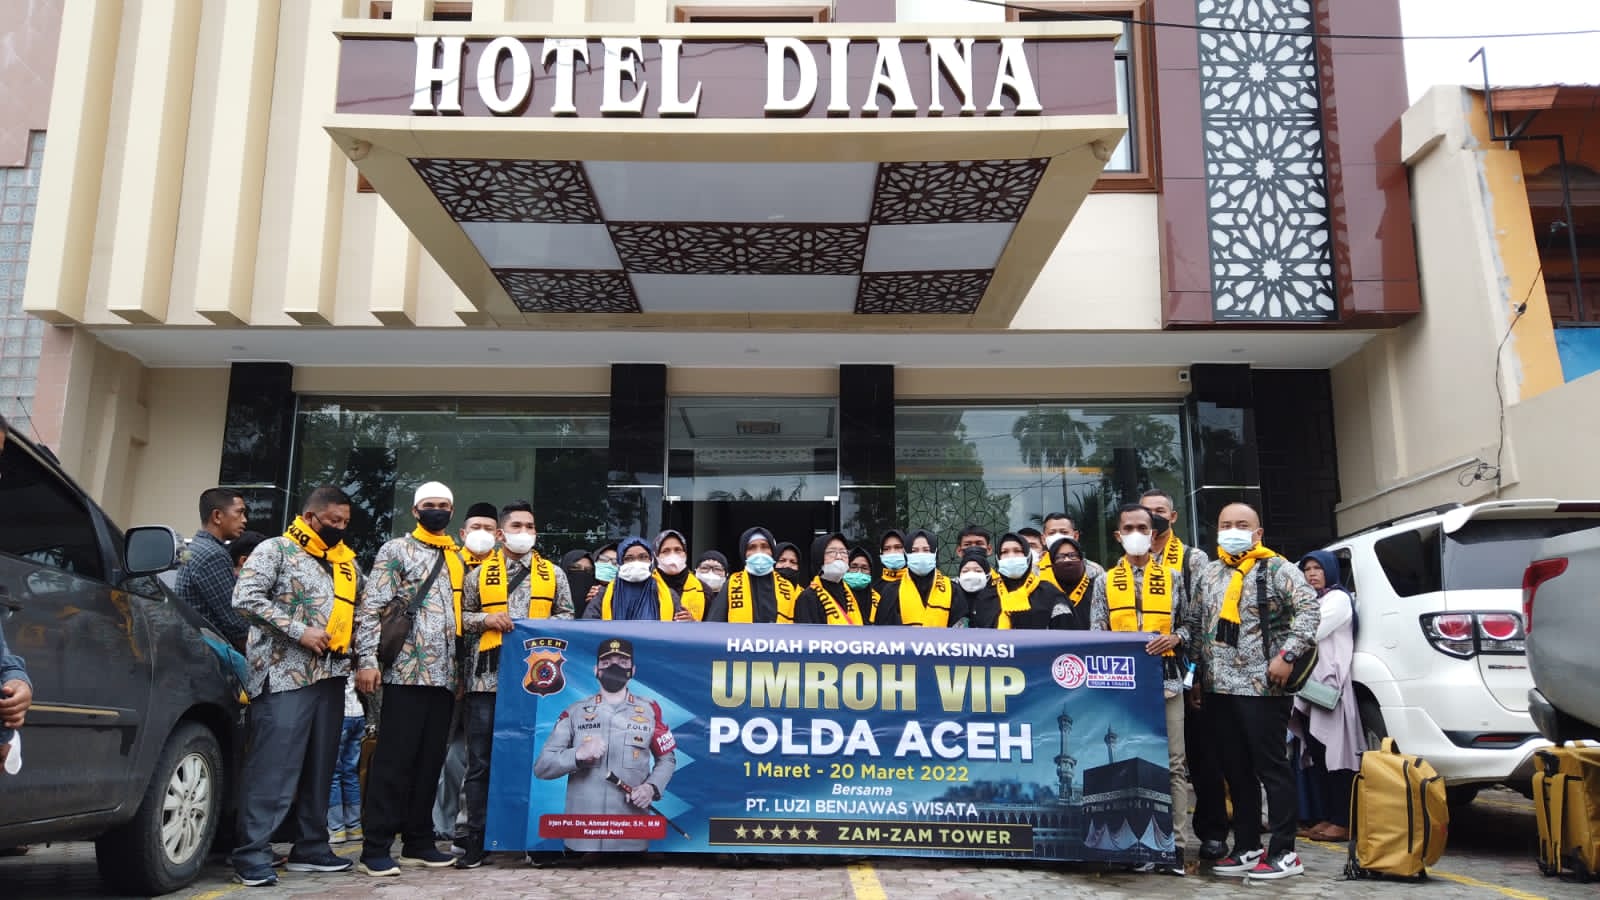 40 Jemaah Umrah Hadiah Vaksinasi Polda Aceh Diberangkatkan